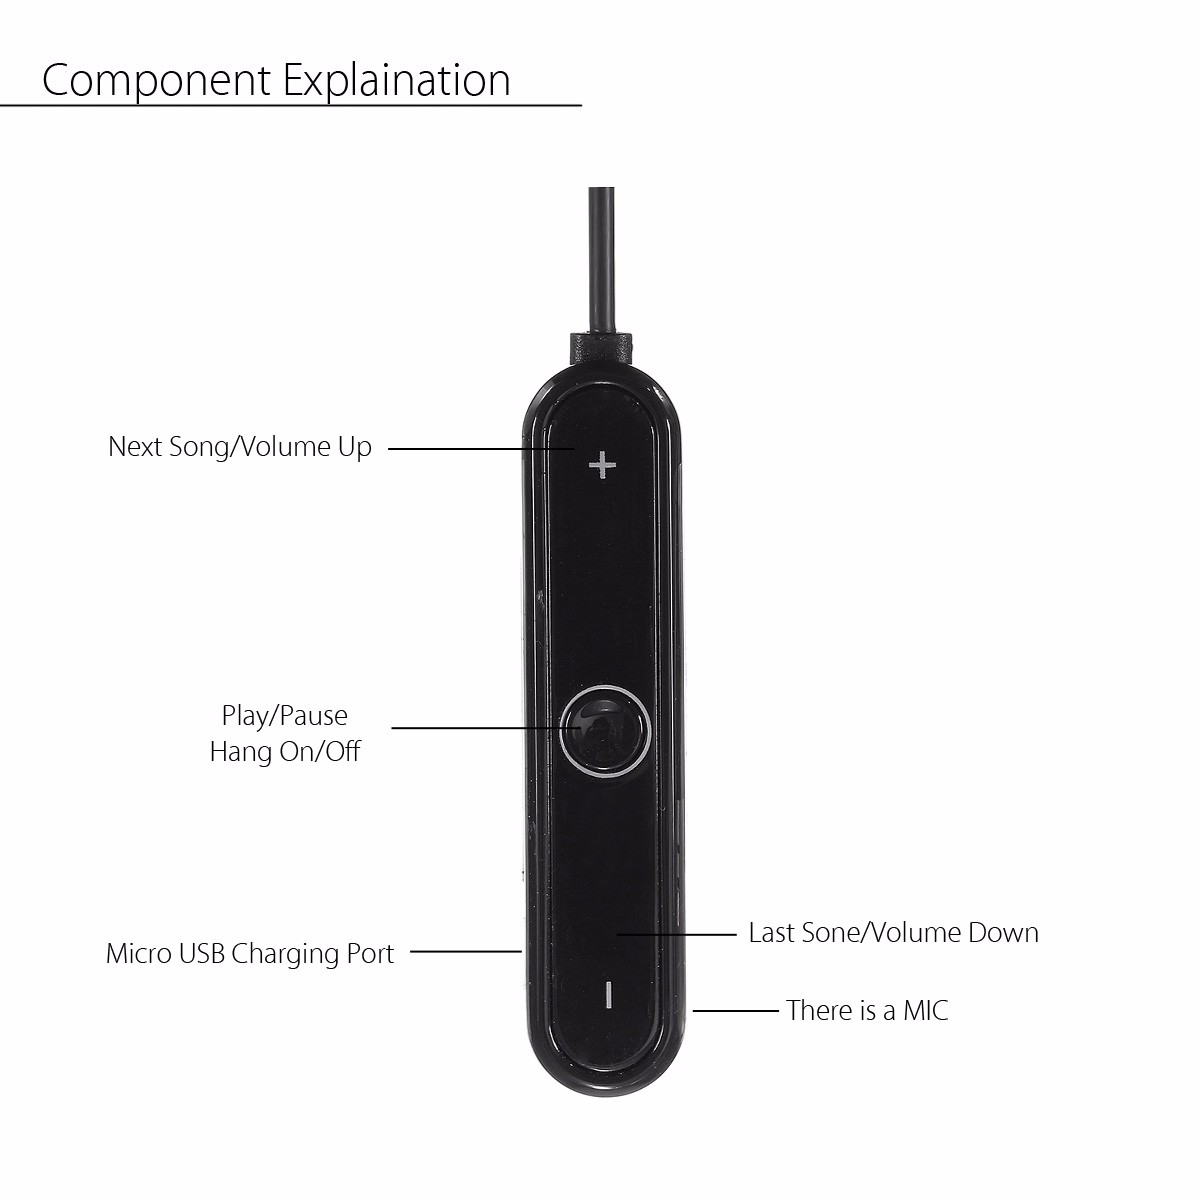 Wireless Bluetooth Adapter Cable For QuietComfort QC15 Bose Earphones Headphones